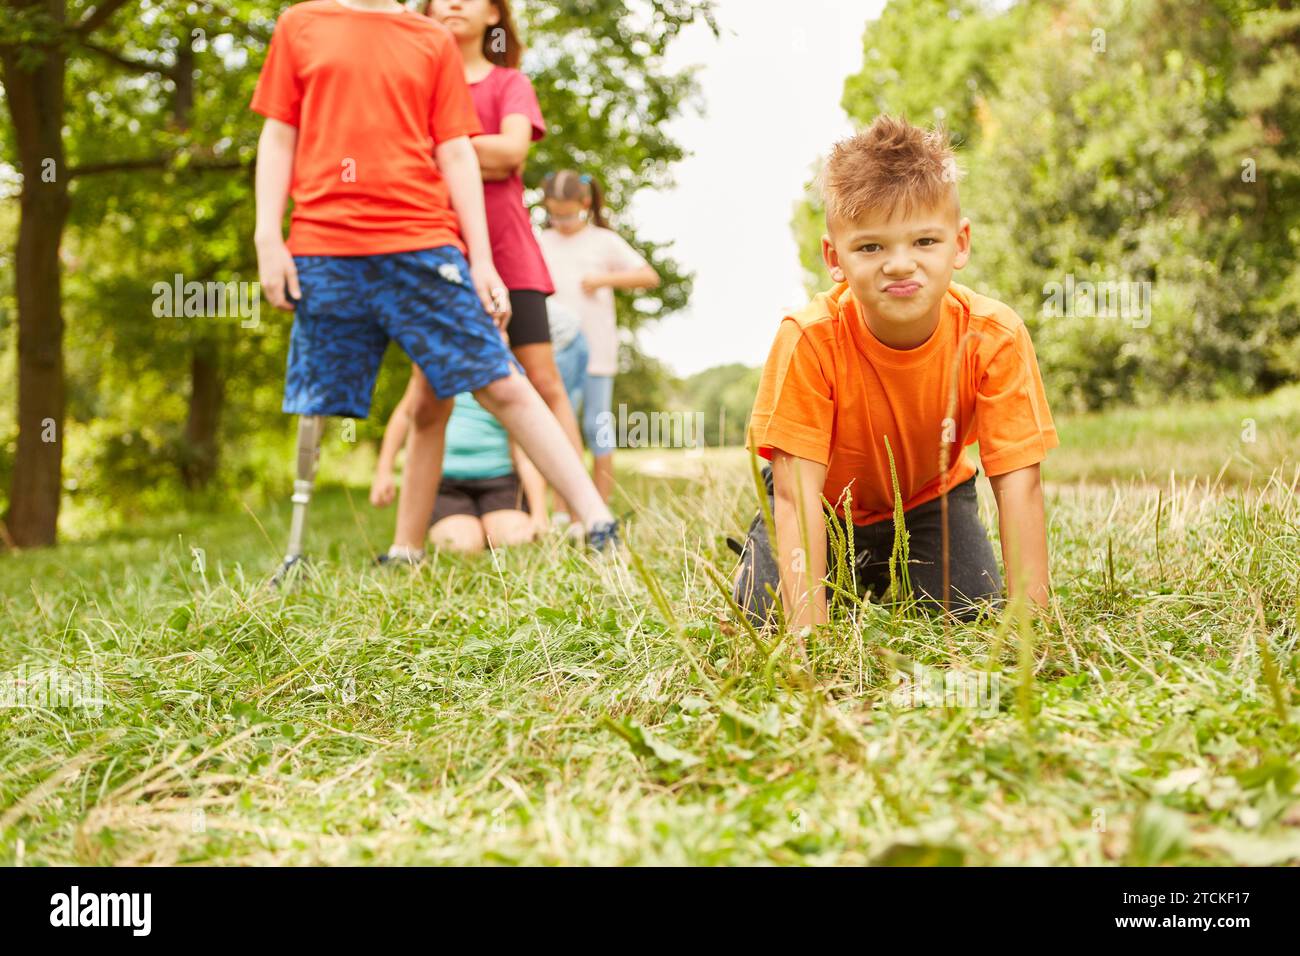 Porträt eines Jungen mit orangefarbenem T-Shirt, der auf Gras kniet, mit Freunden, die im Hintergrund im Park stehen Stockfoto